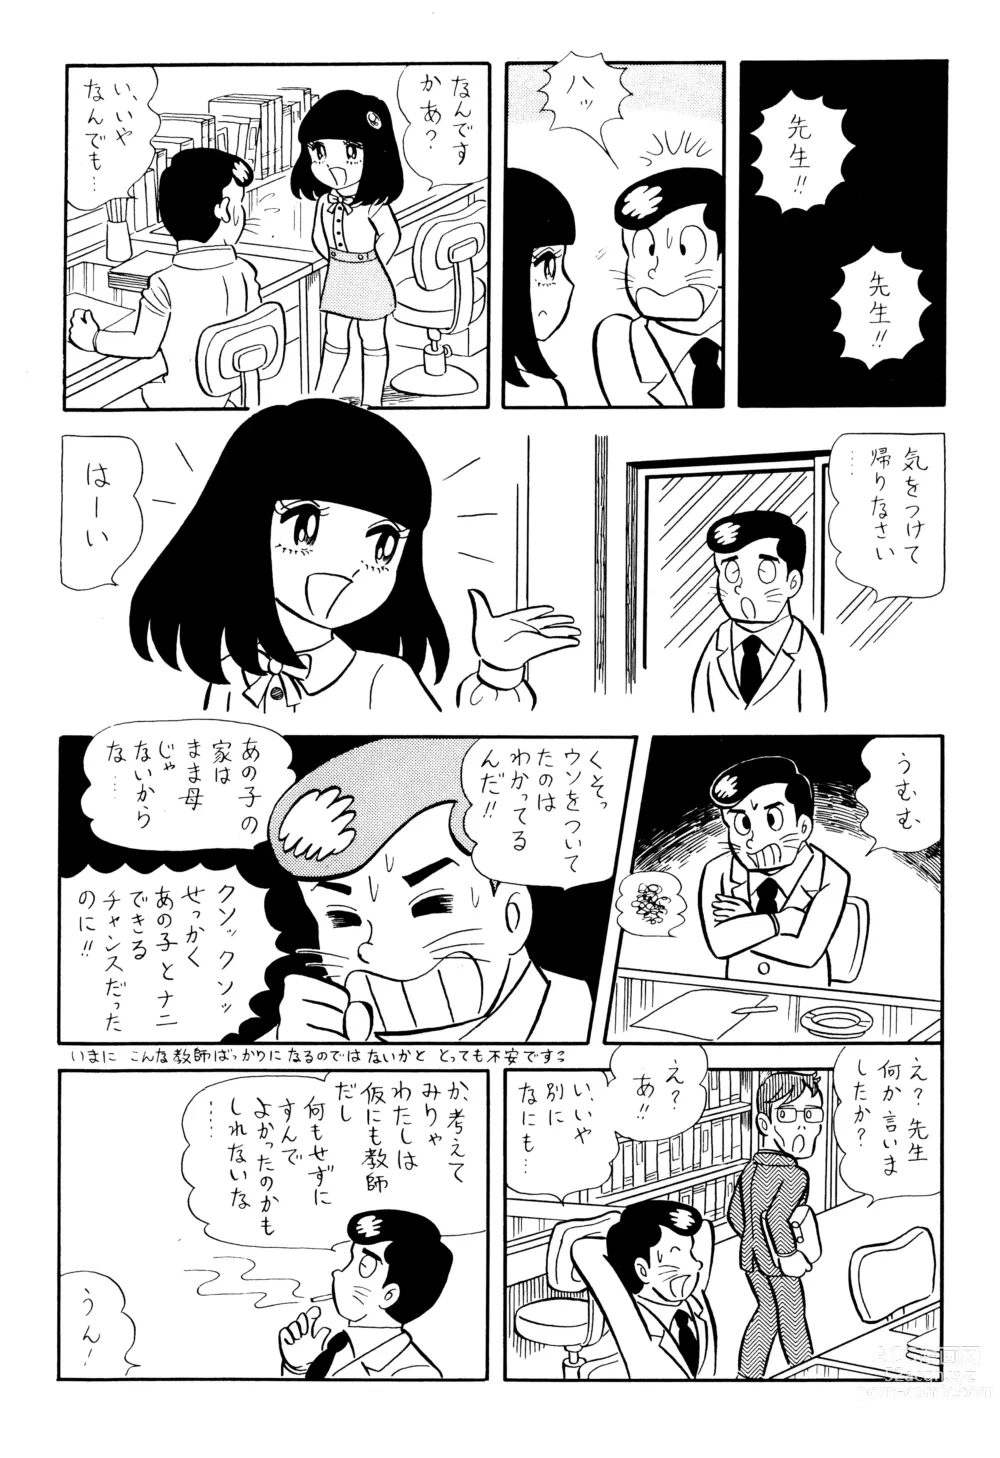 Page 7 of doujinshi Test Houkago Banashi